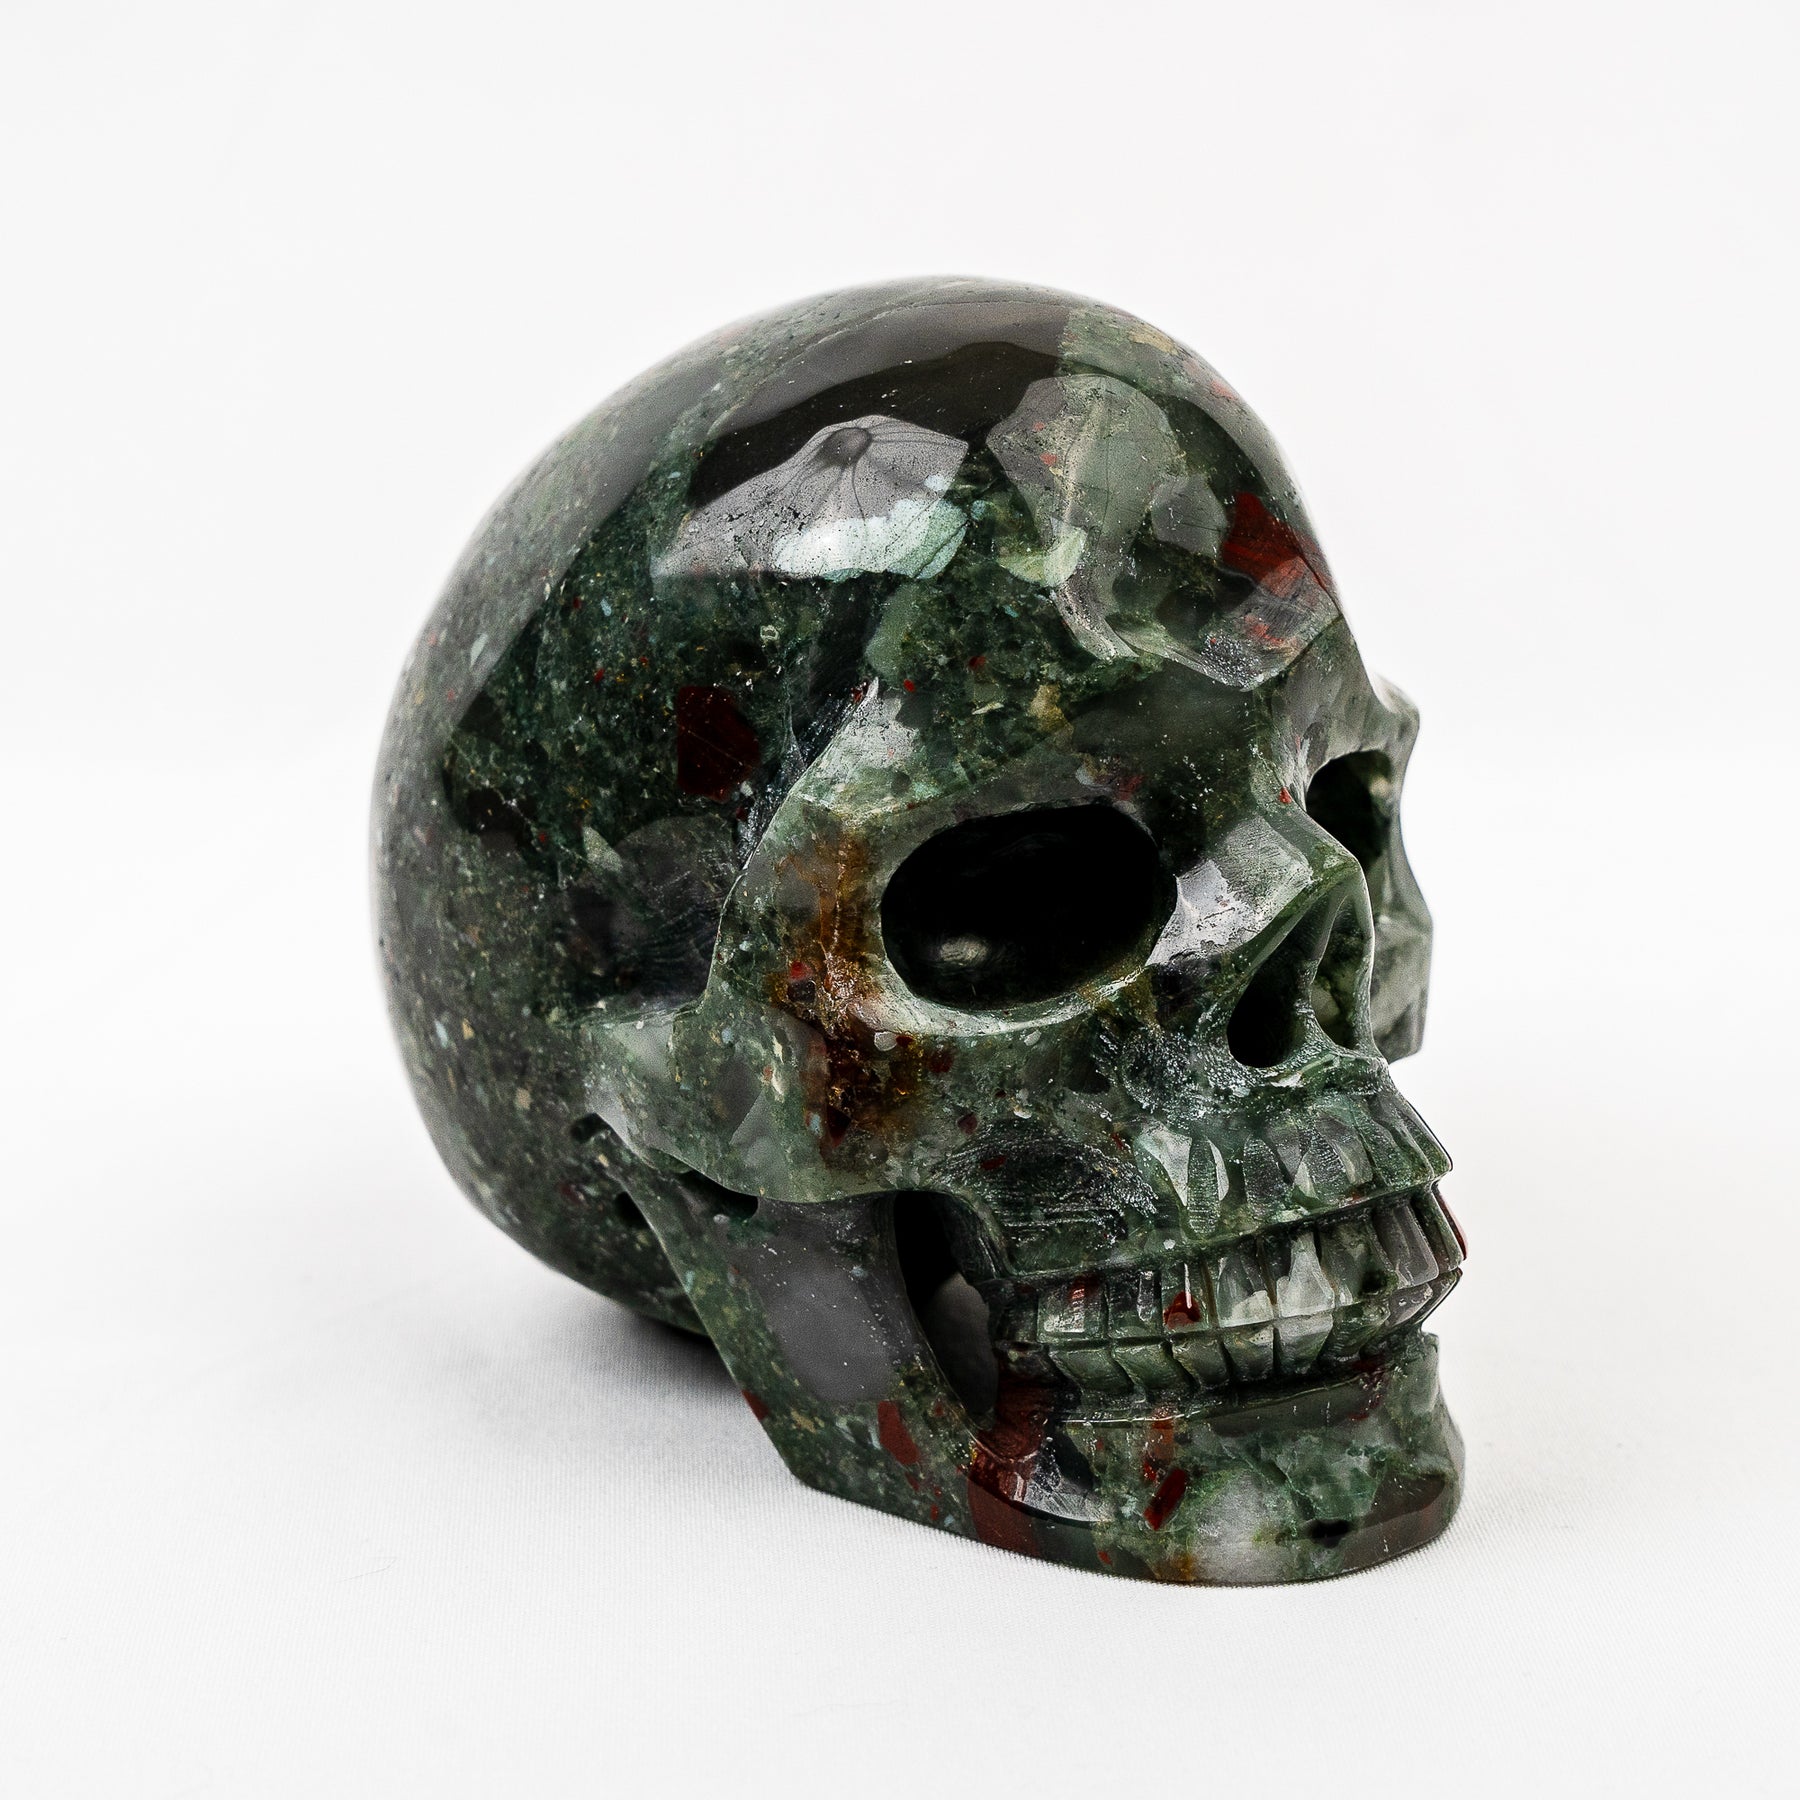 Bloodstone 4.25" Large Crystal Skull